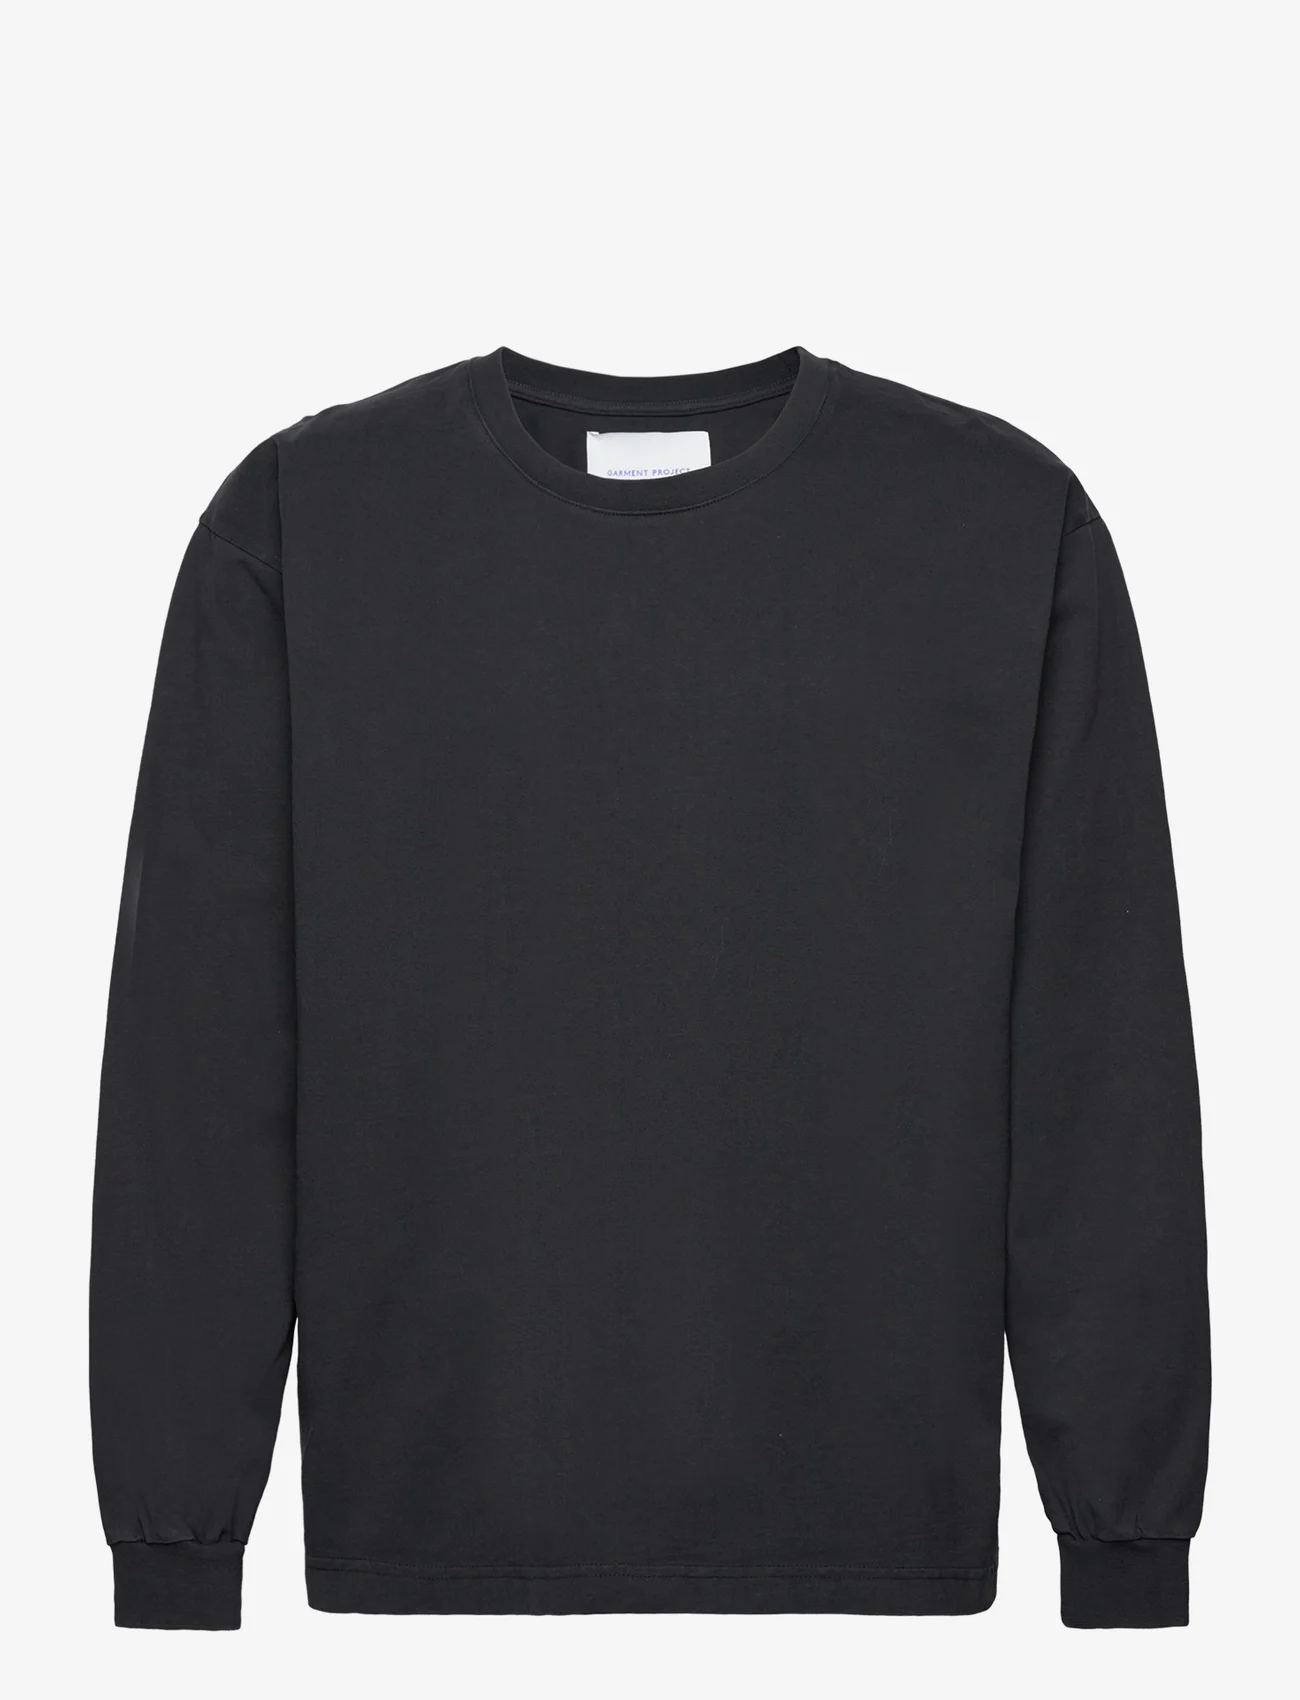 Garment Project - Heavy L/S Tee - Black - långärmade t-shirts - black - 0